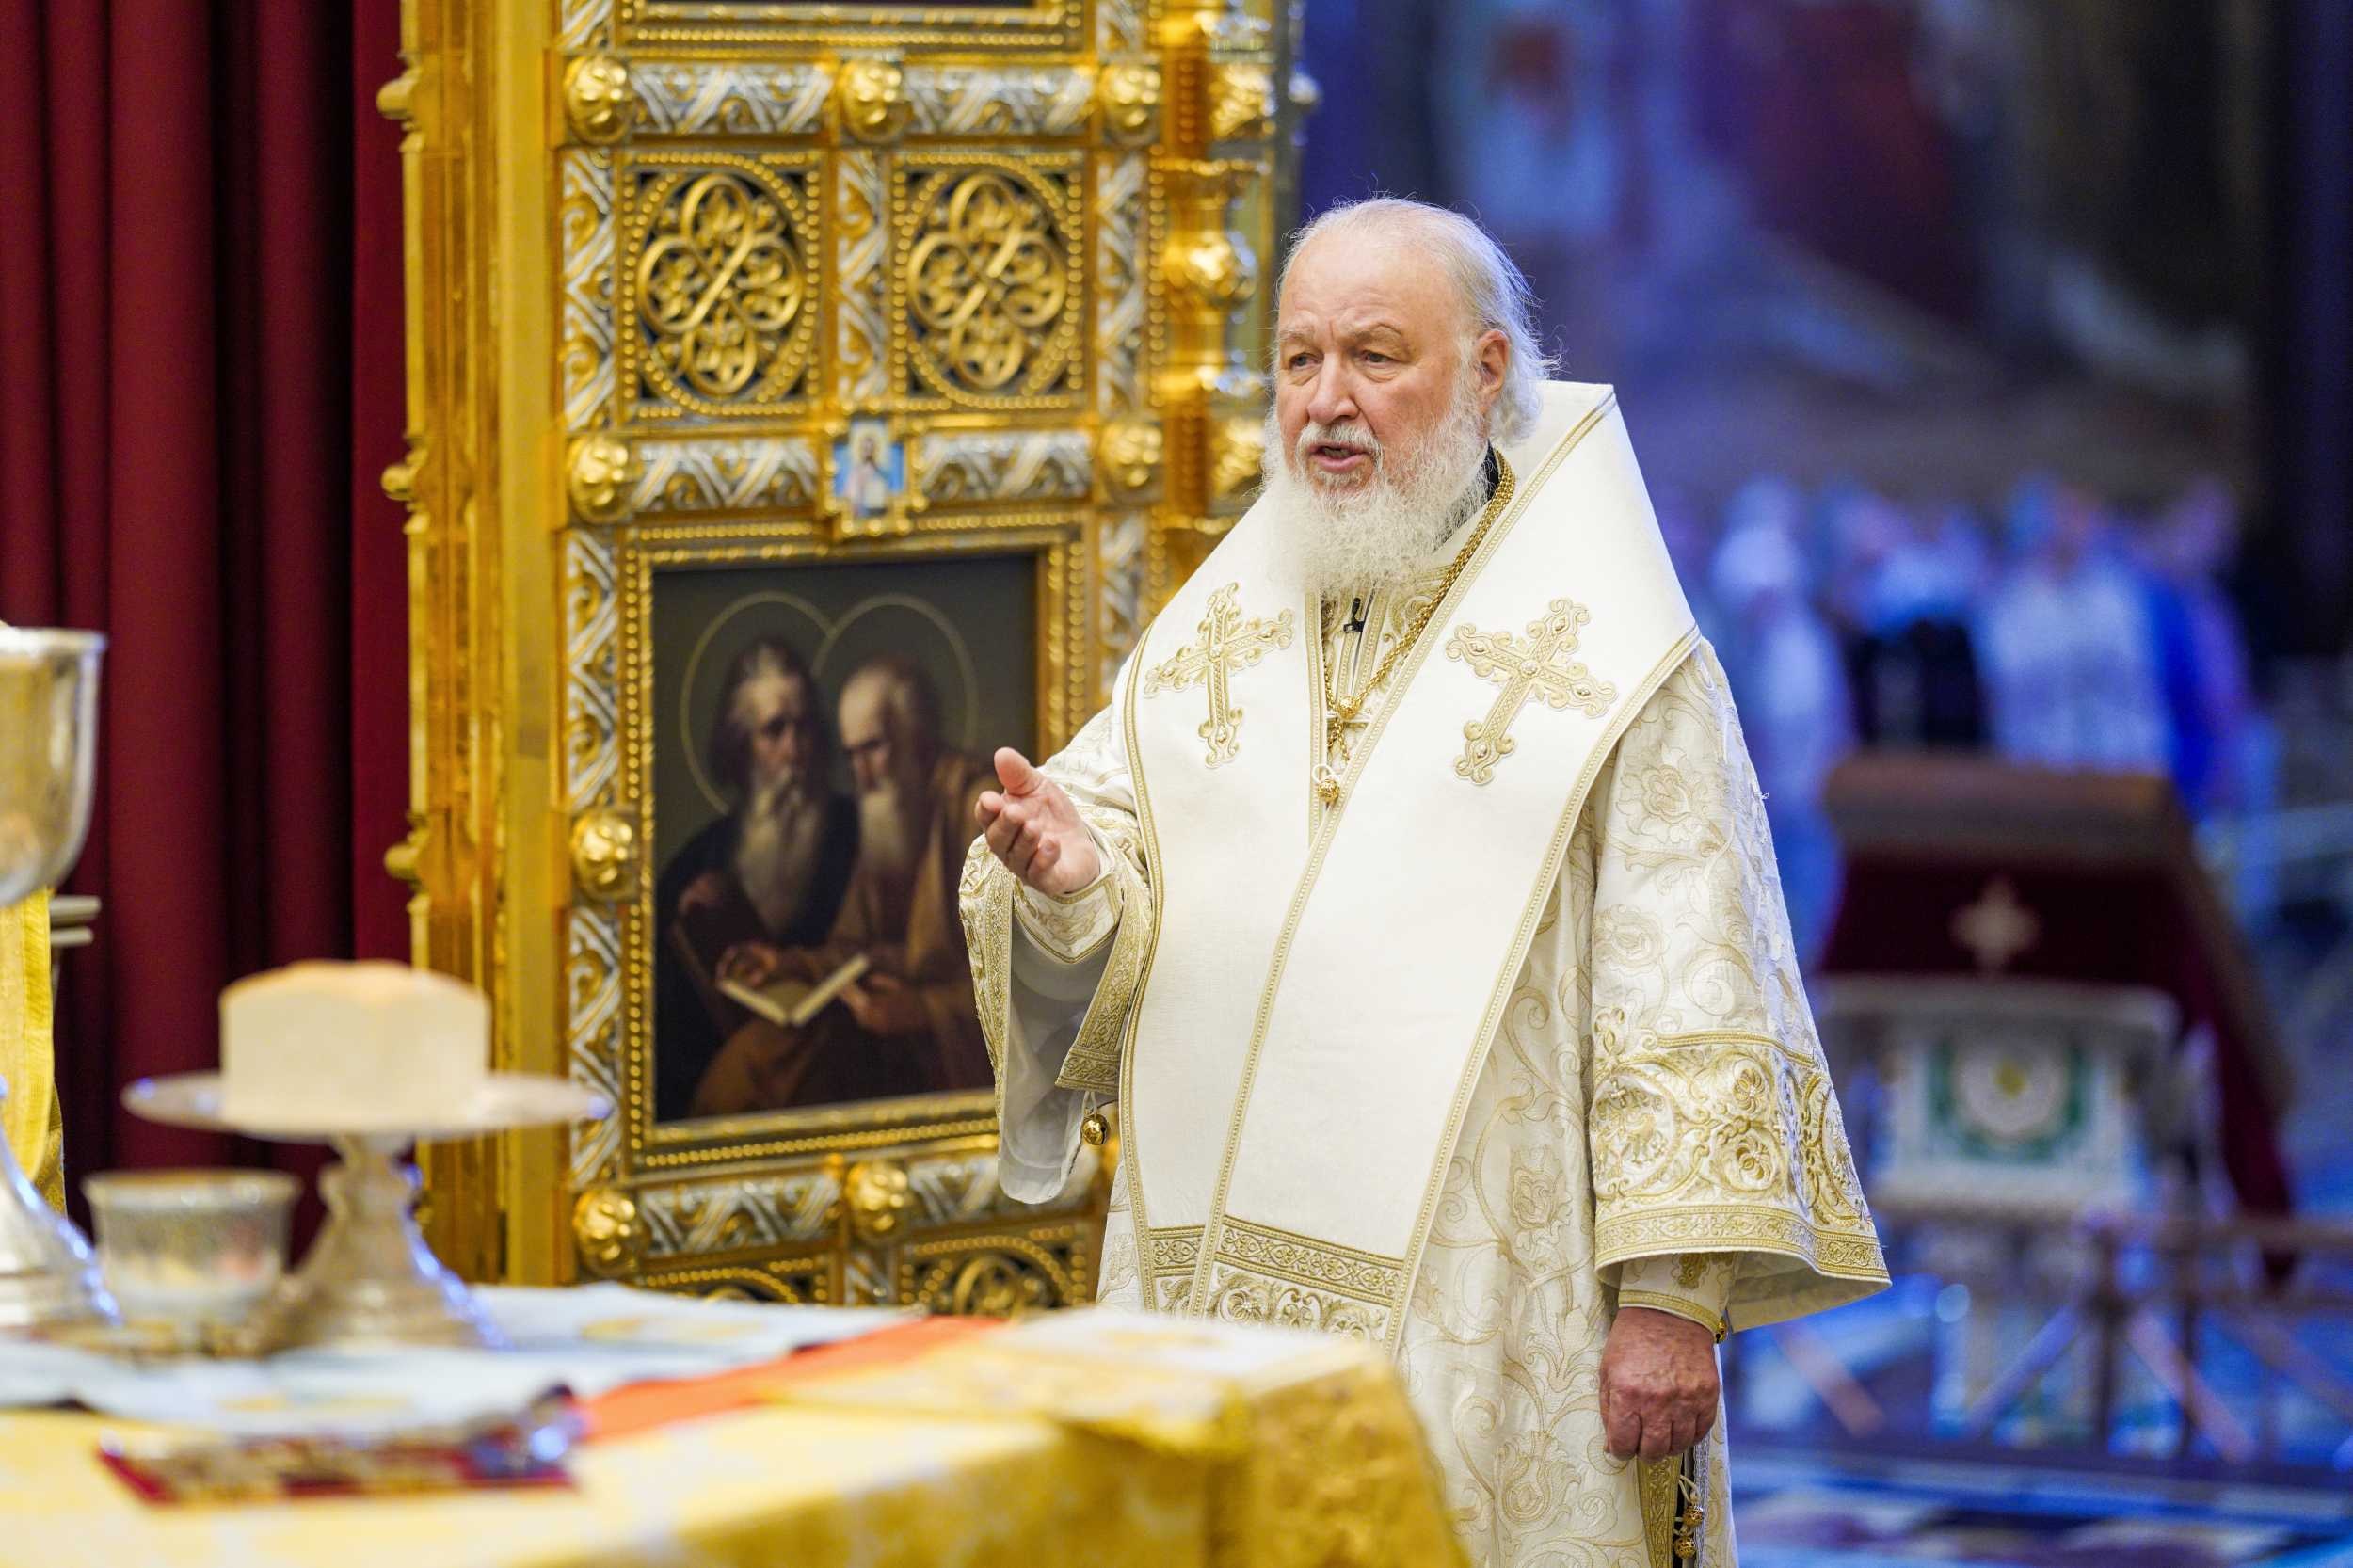 Забыл о надежде и мире патриарх Кирилл: лишь терпение